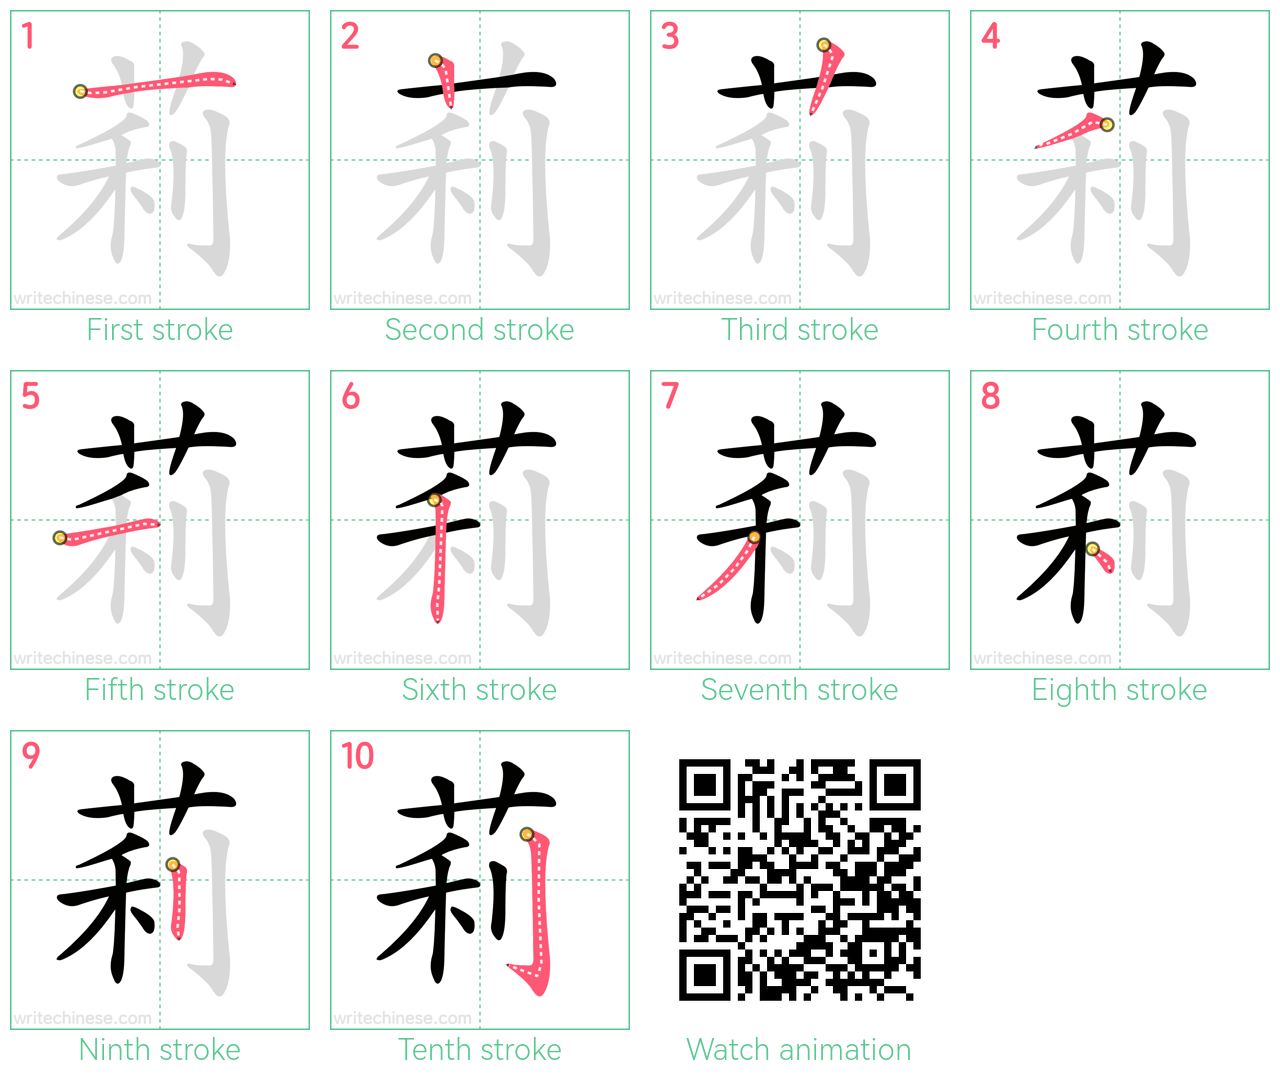 莉 step-by-step stroke order diagrams